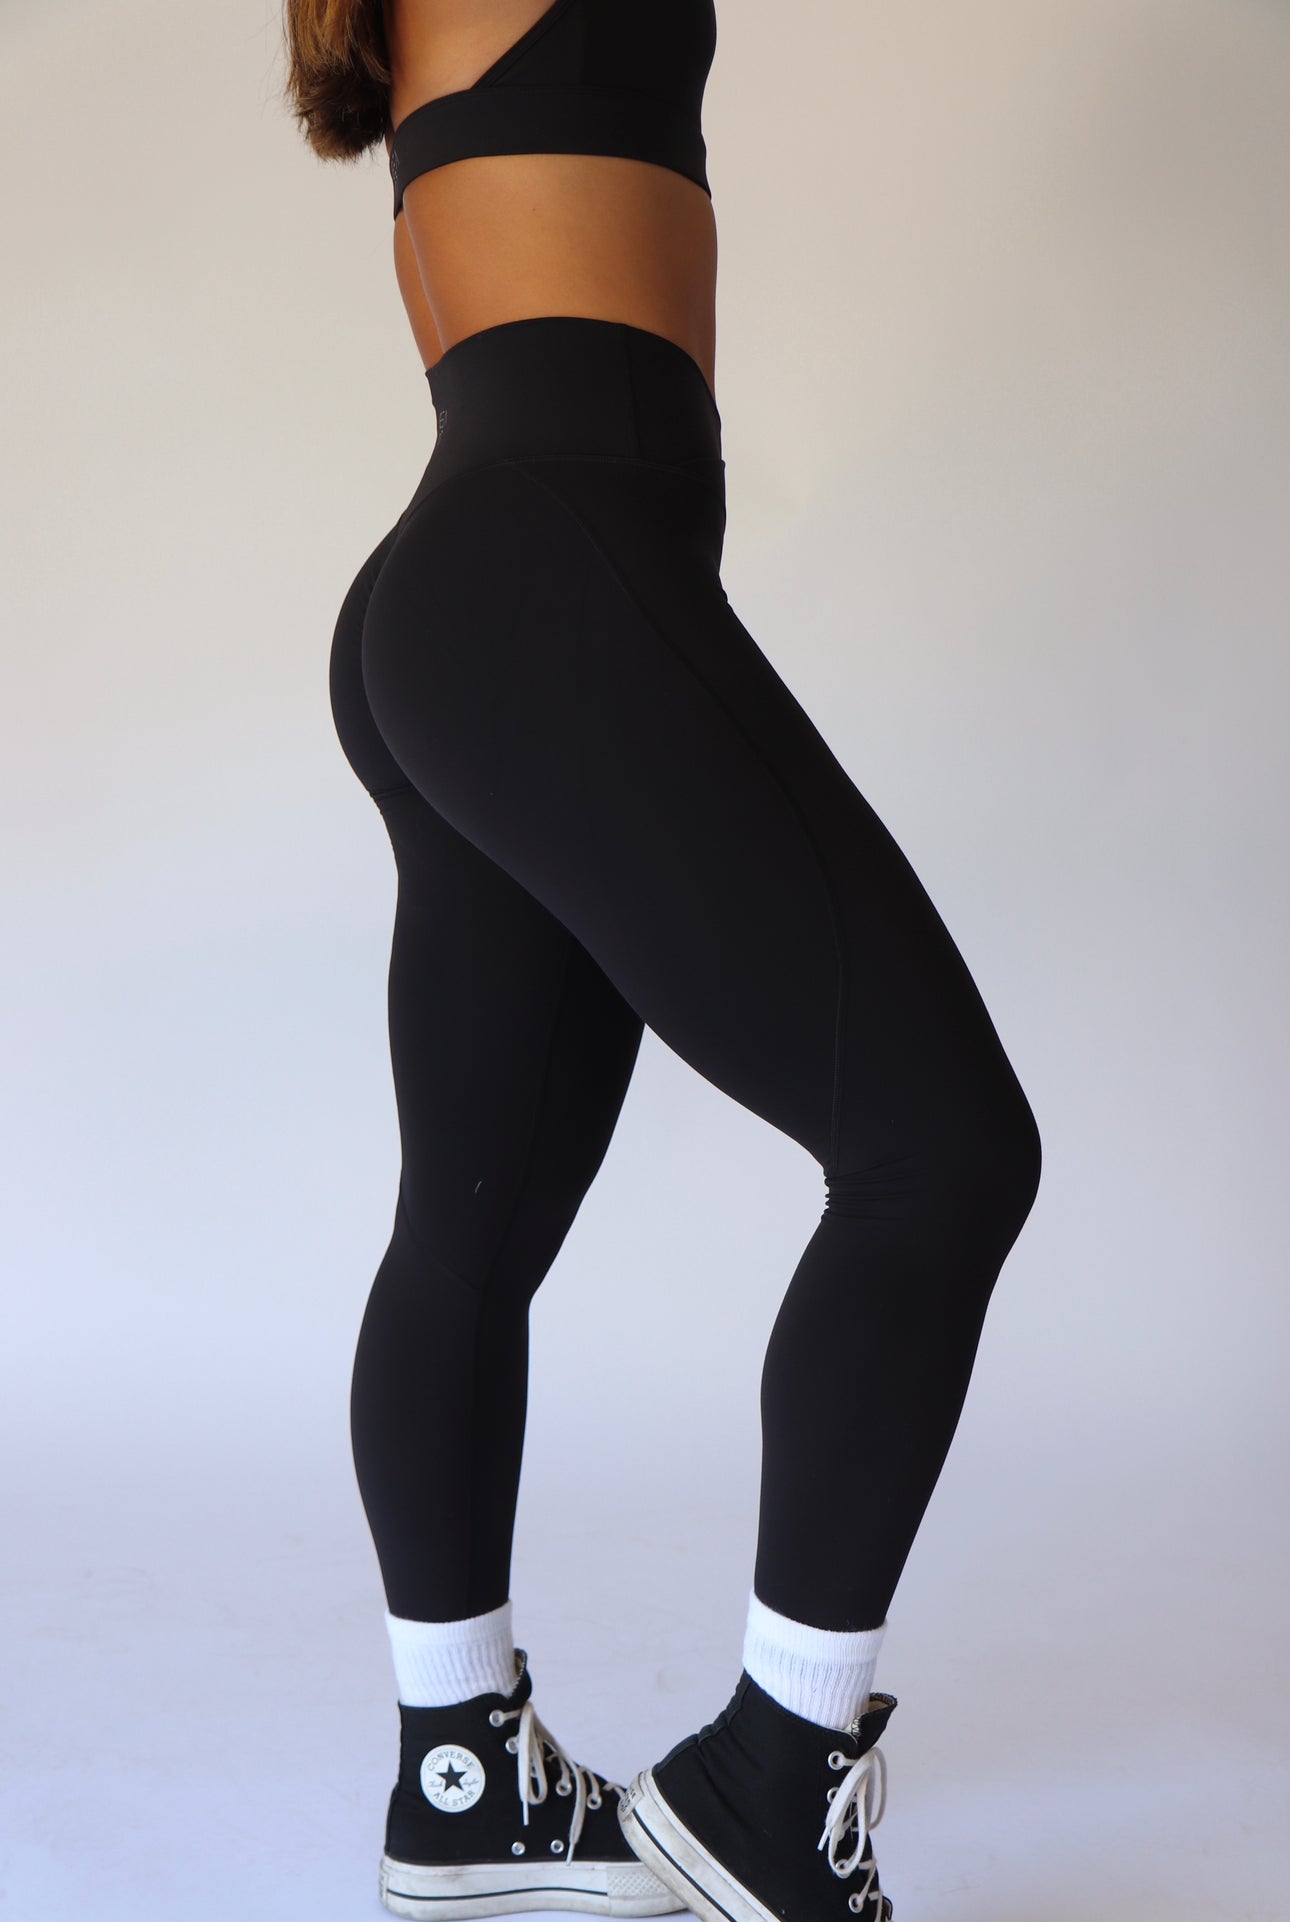 Black leggings, black v cut leggings, soft leggings, plus size leggings 